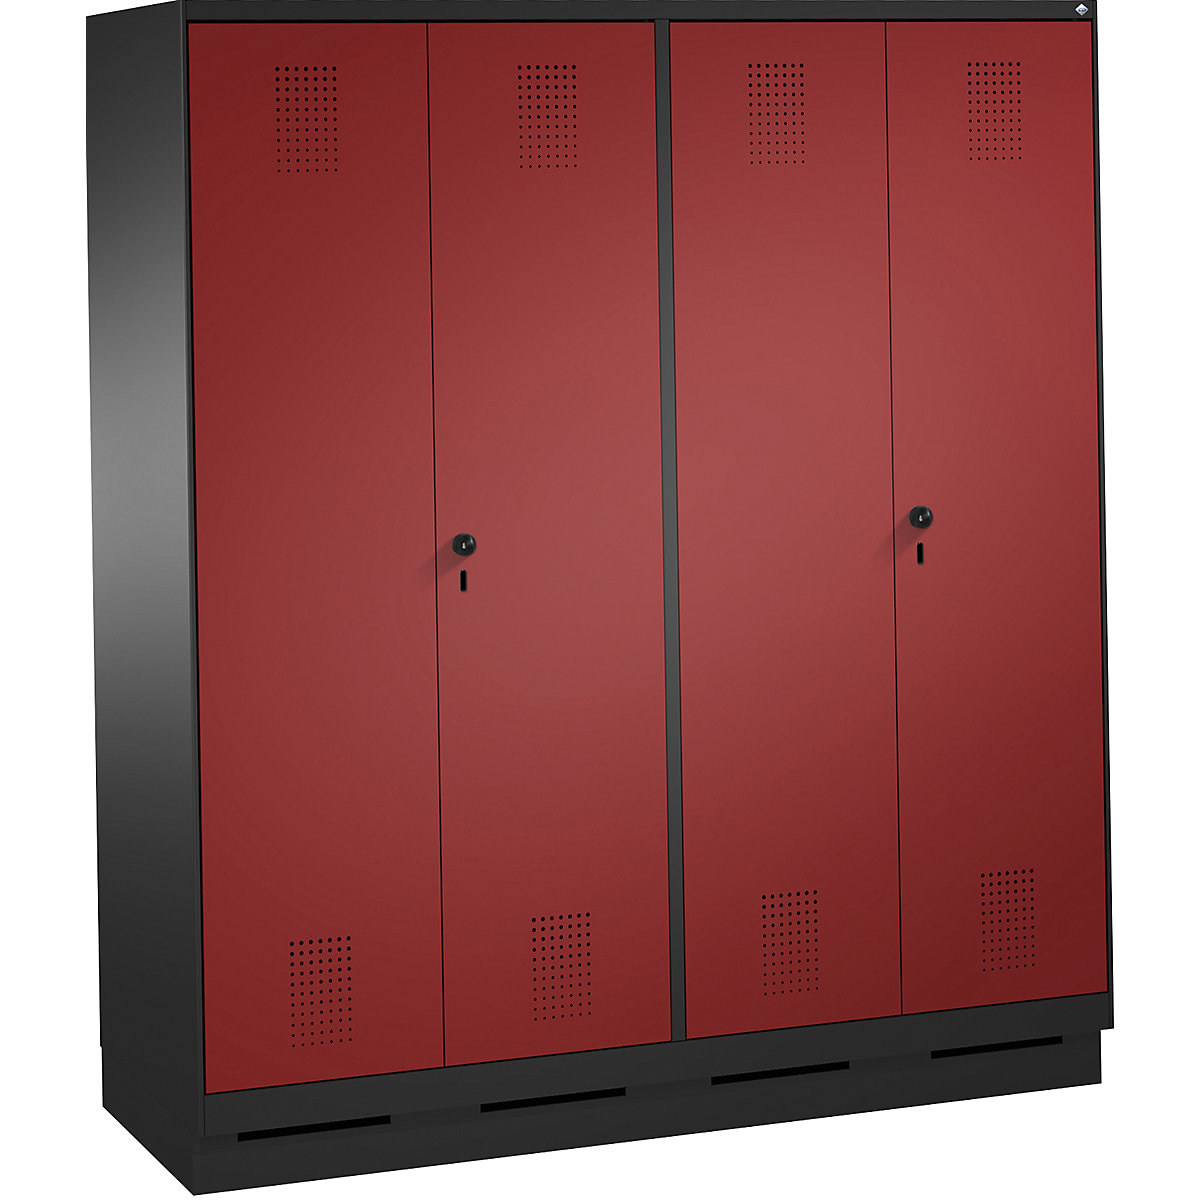 EVOLO öltözőszekrény, egymásra csukódó ajtók – C+P, 4 fülke, fülkeszélesség 400 mm, lábazattal, feketésszürke / rubinvörös-14